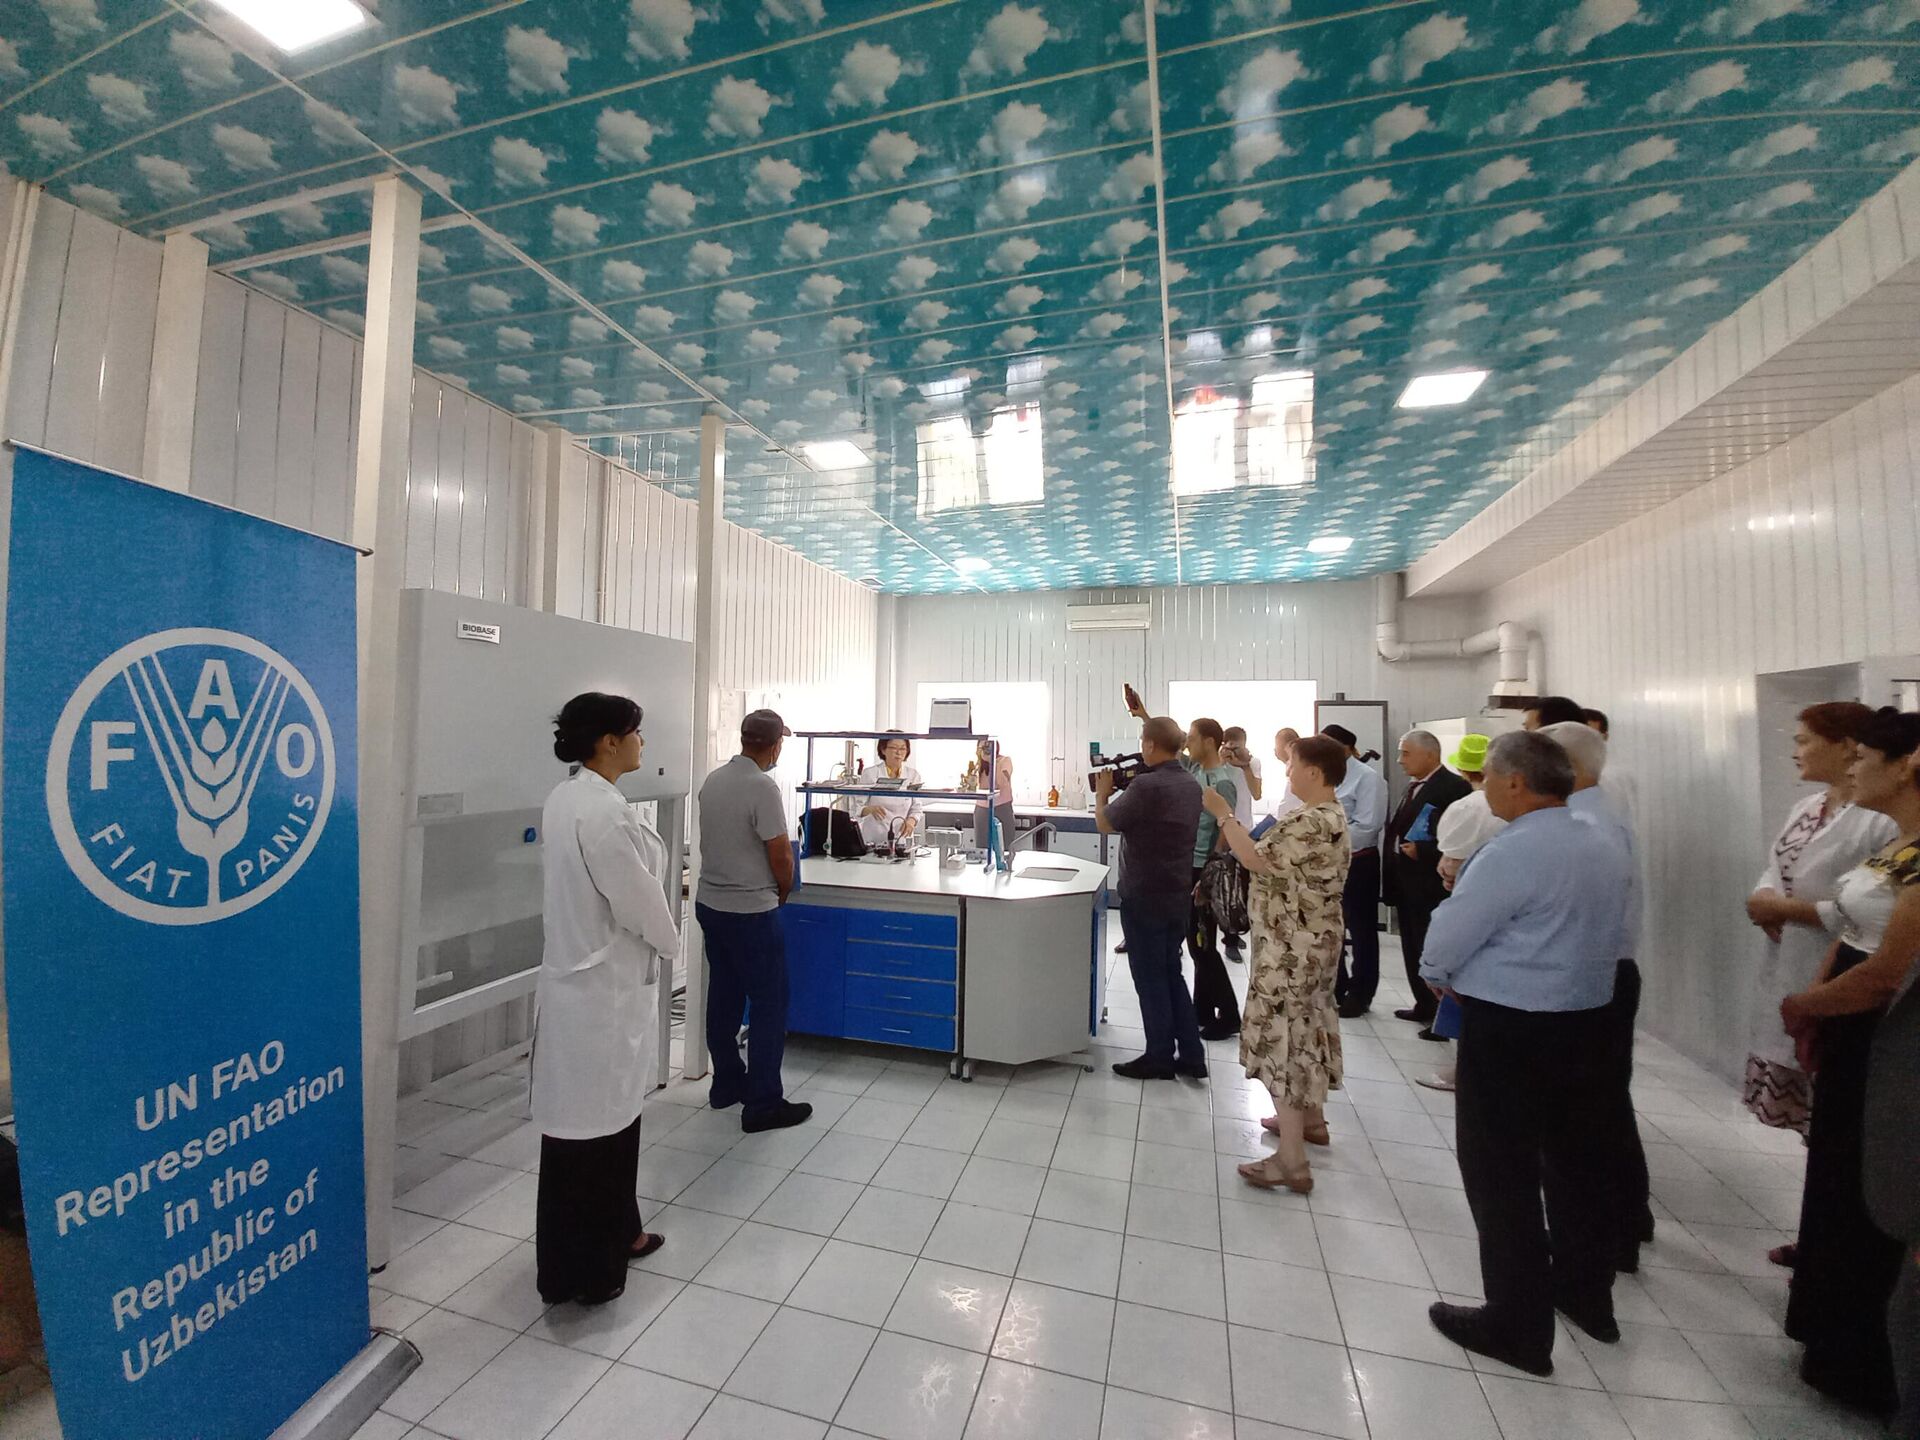 Узбекистан можно открыть. Лаборатория ихтиопатологии. Рыбоводство Узбекистан.